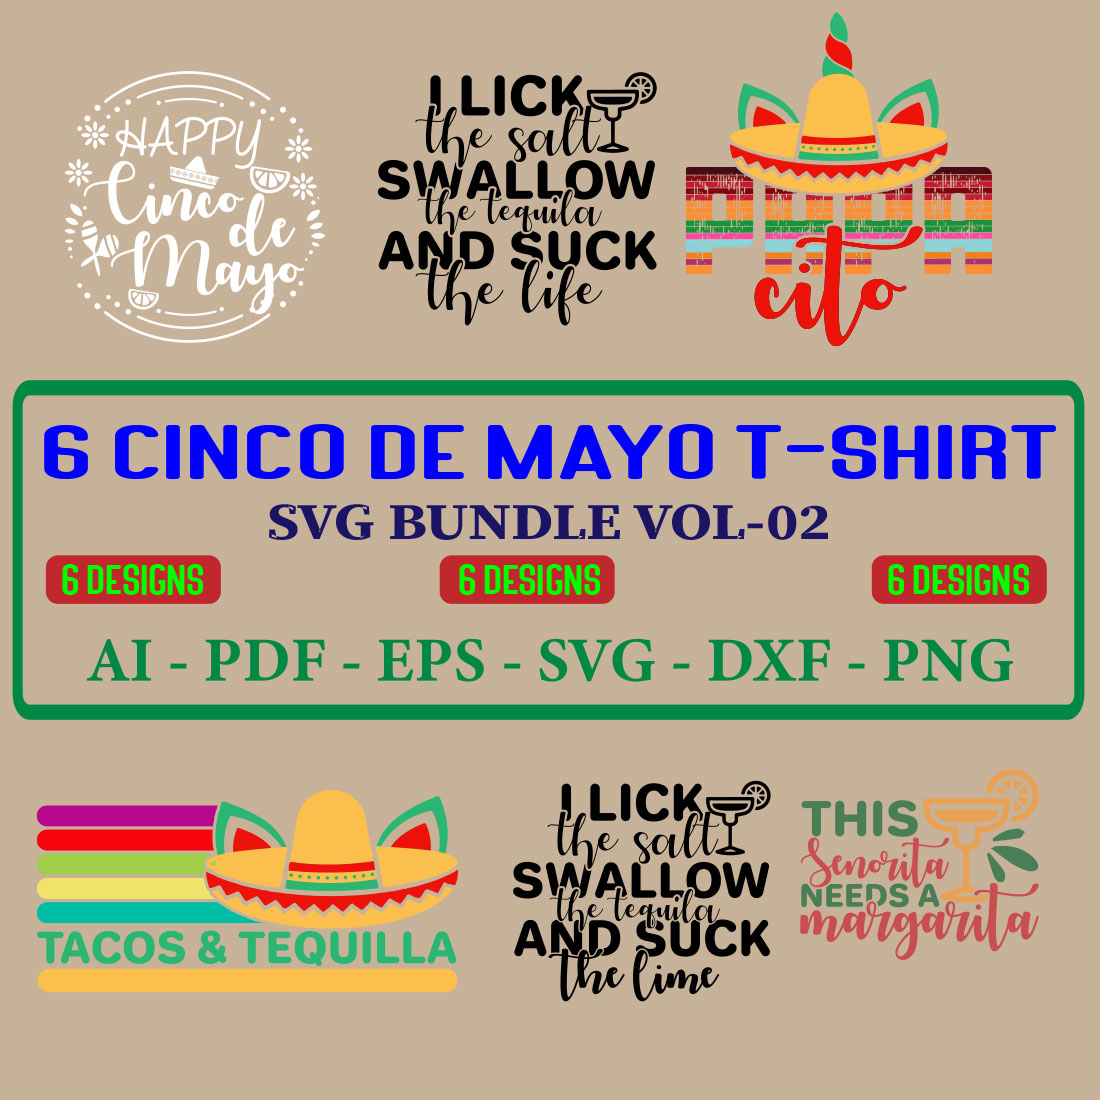 6 Cinco De Mayo T-shirt SVG Bundle Vol-02 cover image.